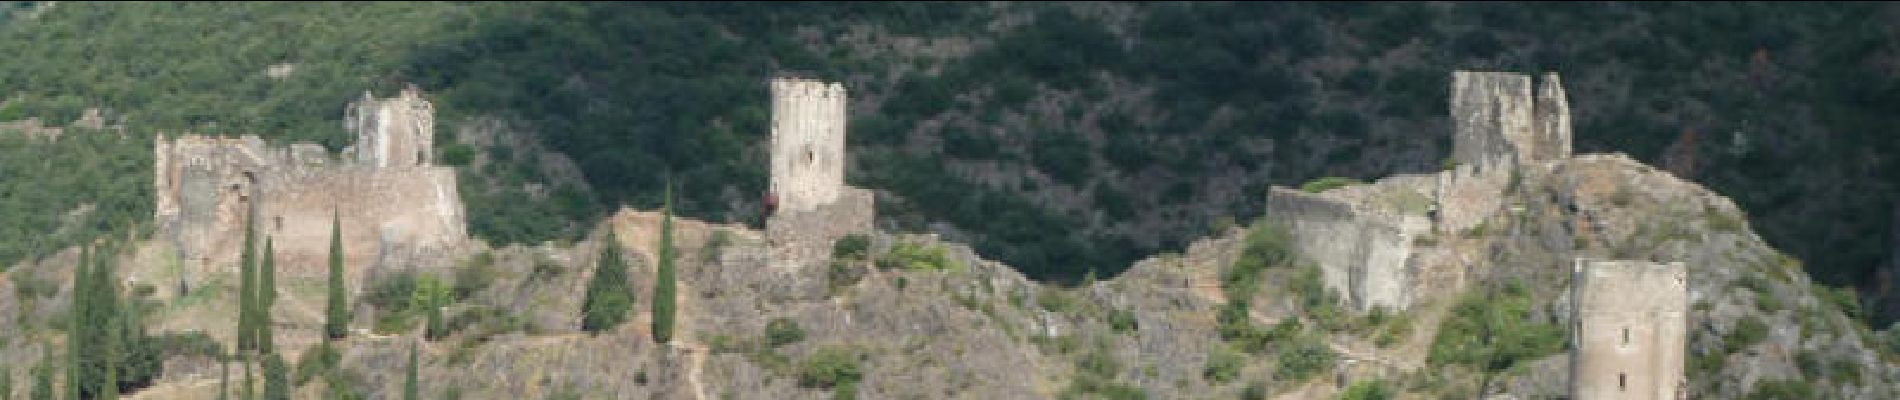 Tocht Stappen Lastours - Un tour autour des tours - Les châteaux de Lastours - Photo